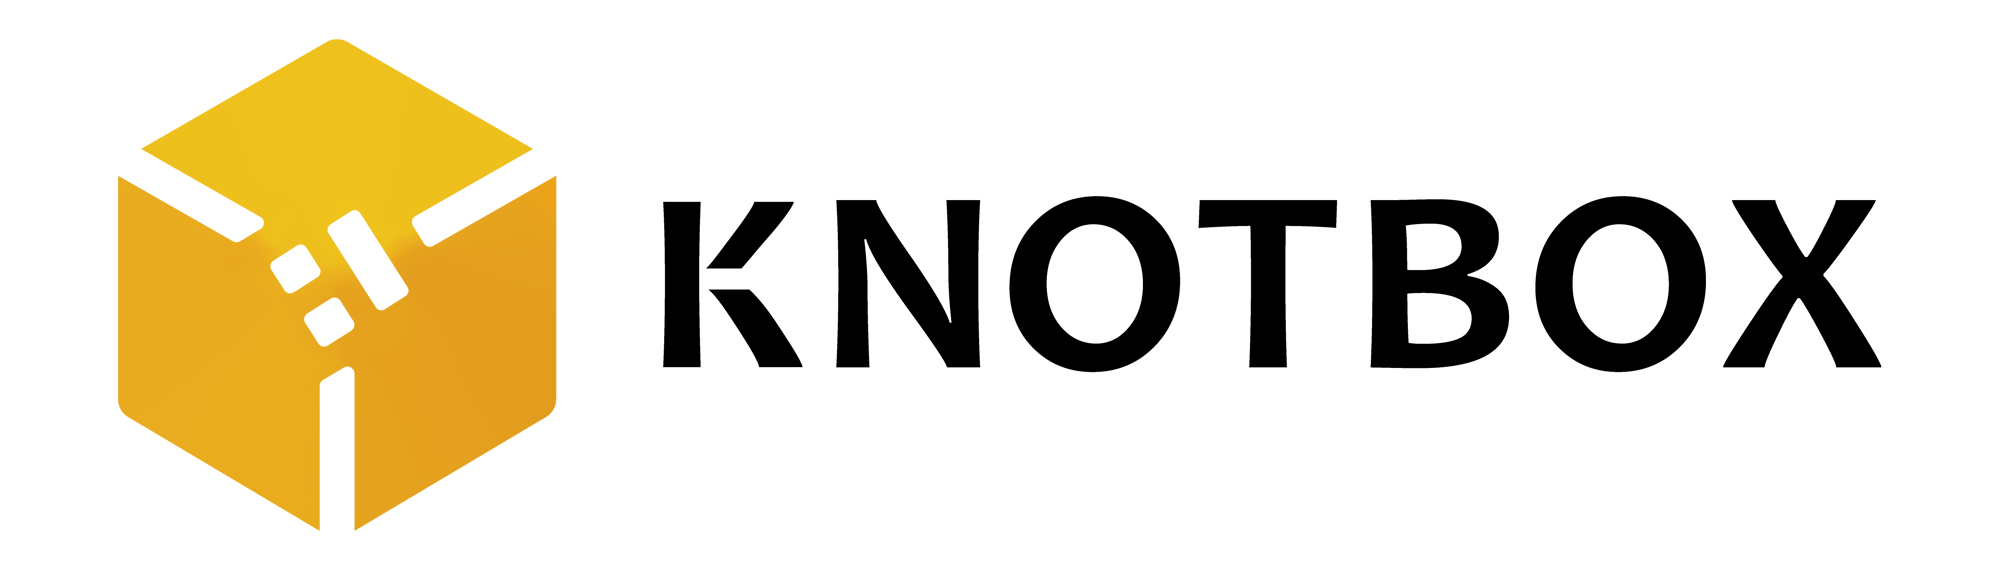 kontbox_logo